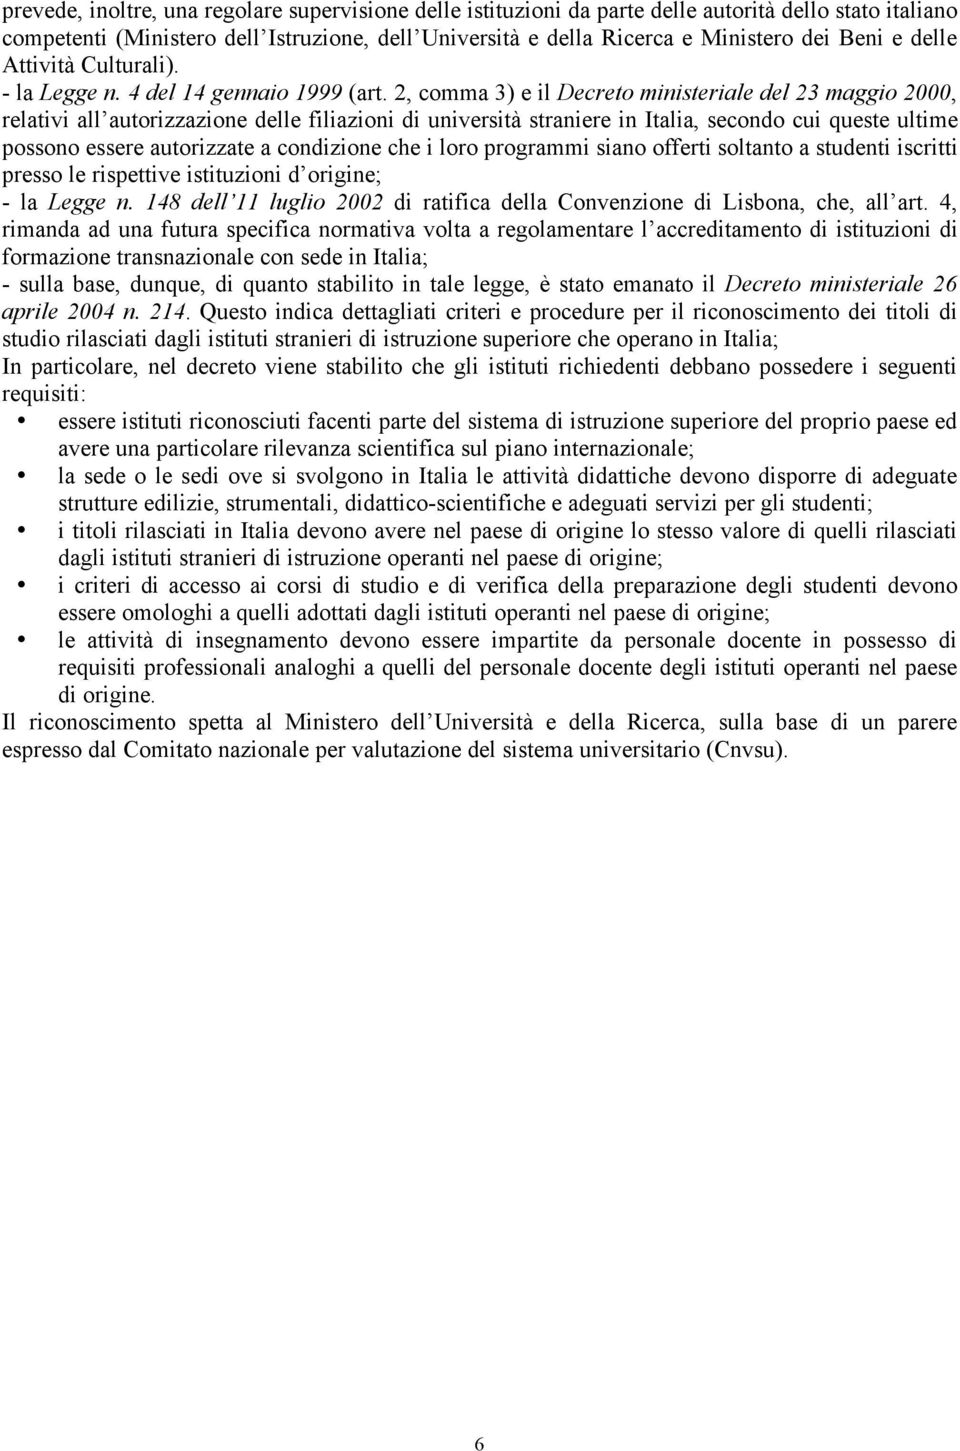 2, comma 3) e il Decreto ministeriale del 23 maggio 2000, relativi all autorizzazione delle filiazioni di università straniere in Italia, secondo cui queste ultime possono essere autorizzate a